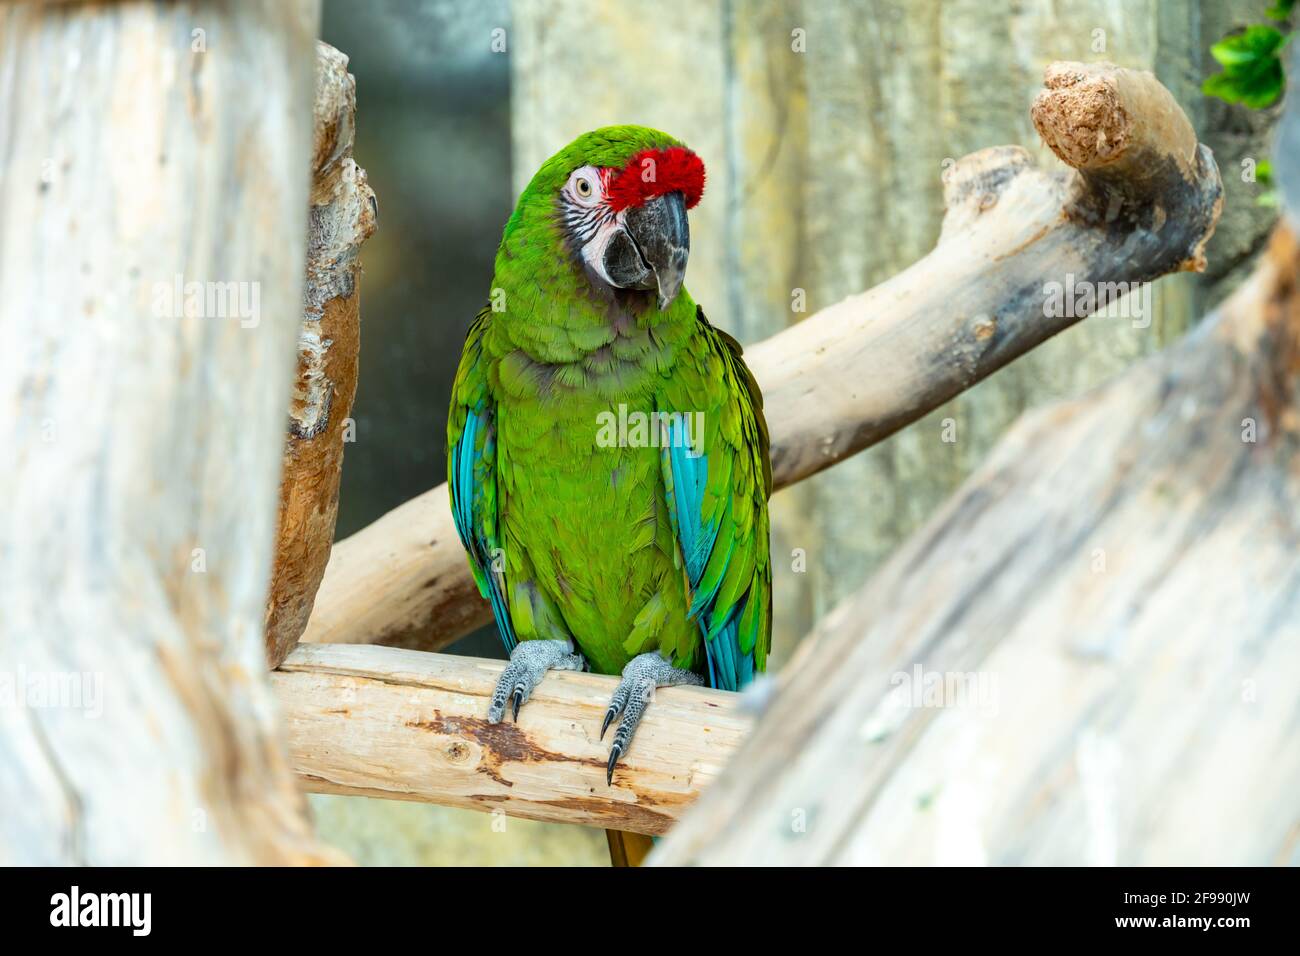 Großer Ara-Papagei mit riesigem Schnabel sitzt auf dem Ast und schaut auf  die Kamera. Grün-roter Ara Papagei Nahaufnahme Stockfotografie - Alamy